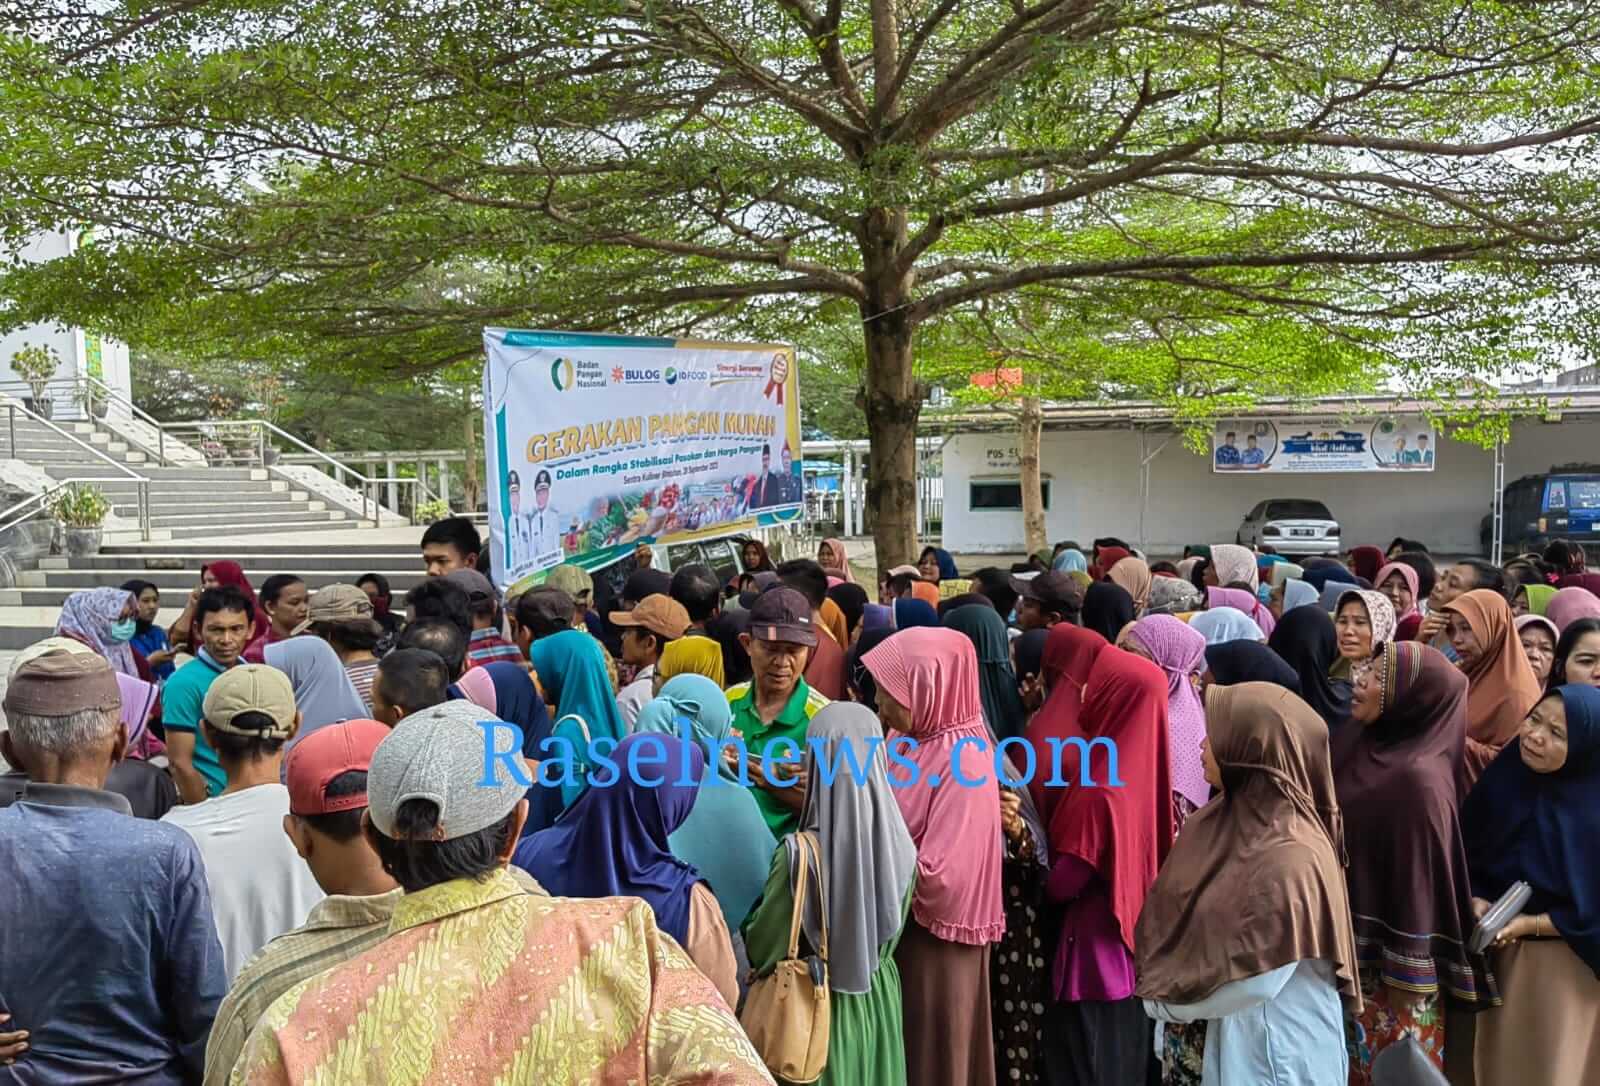 BREAKING NEWS: Pasar Beras Murah di Kaur Langsung Diserbu Emak-emak, Bulog Siapkan 7 Ton